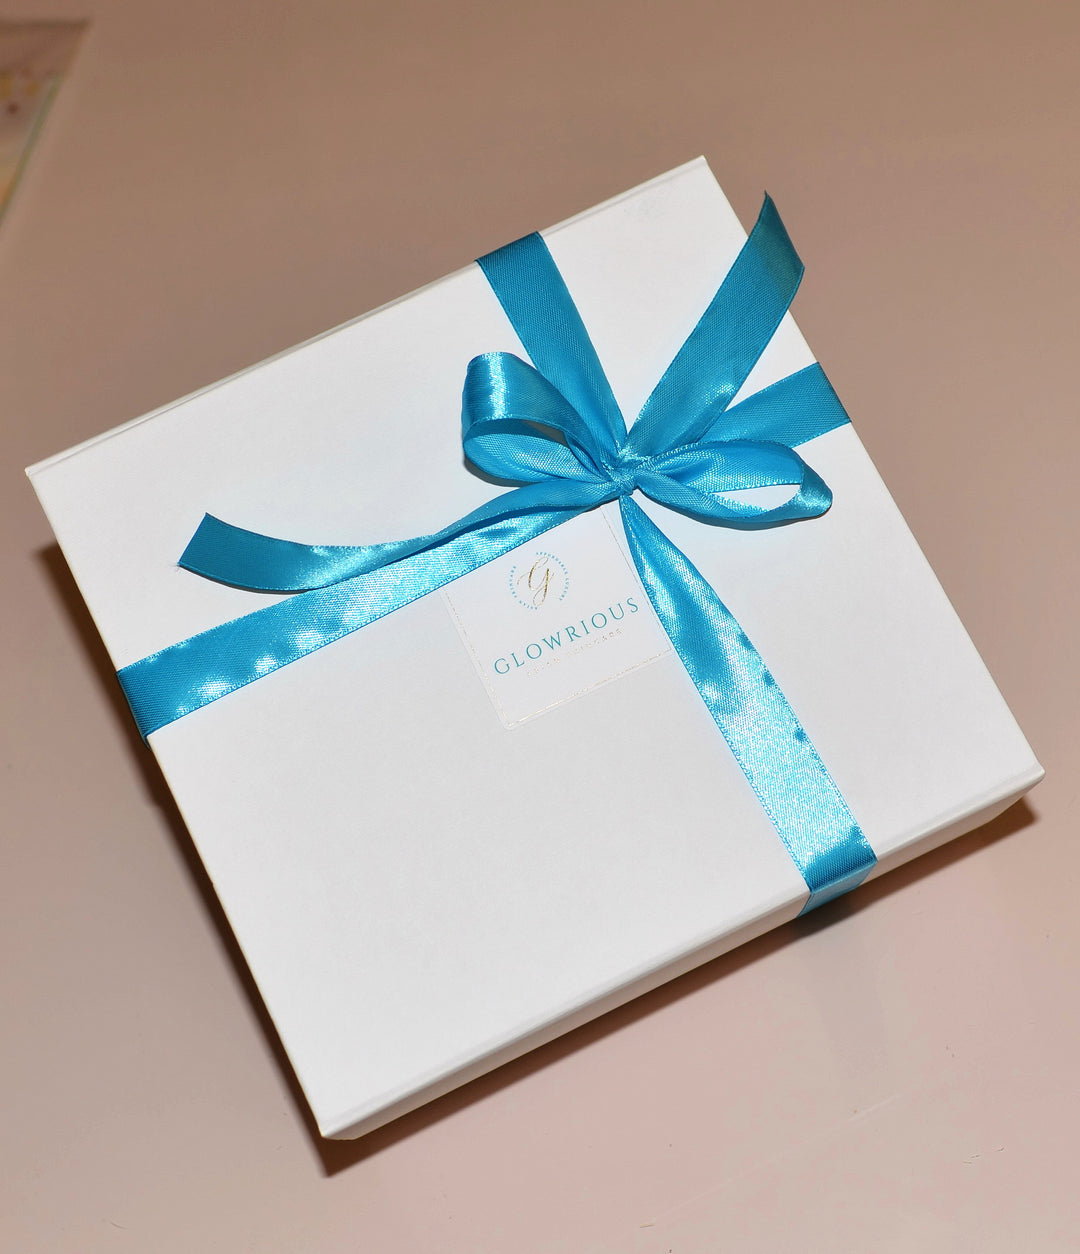 Cutie Cadou Glowrious Gift Box